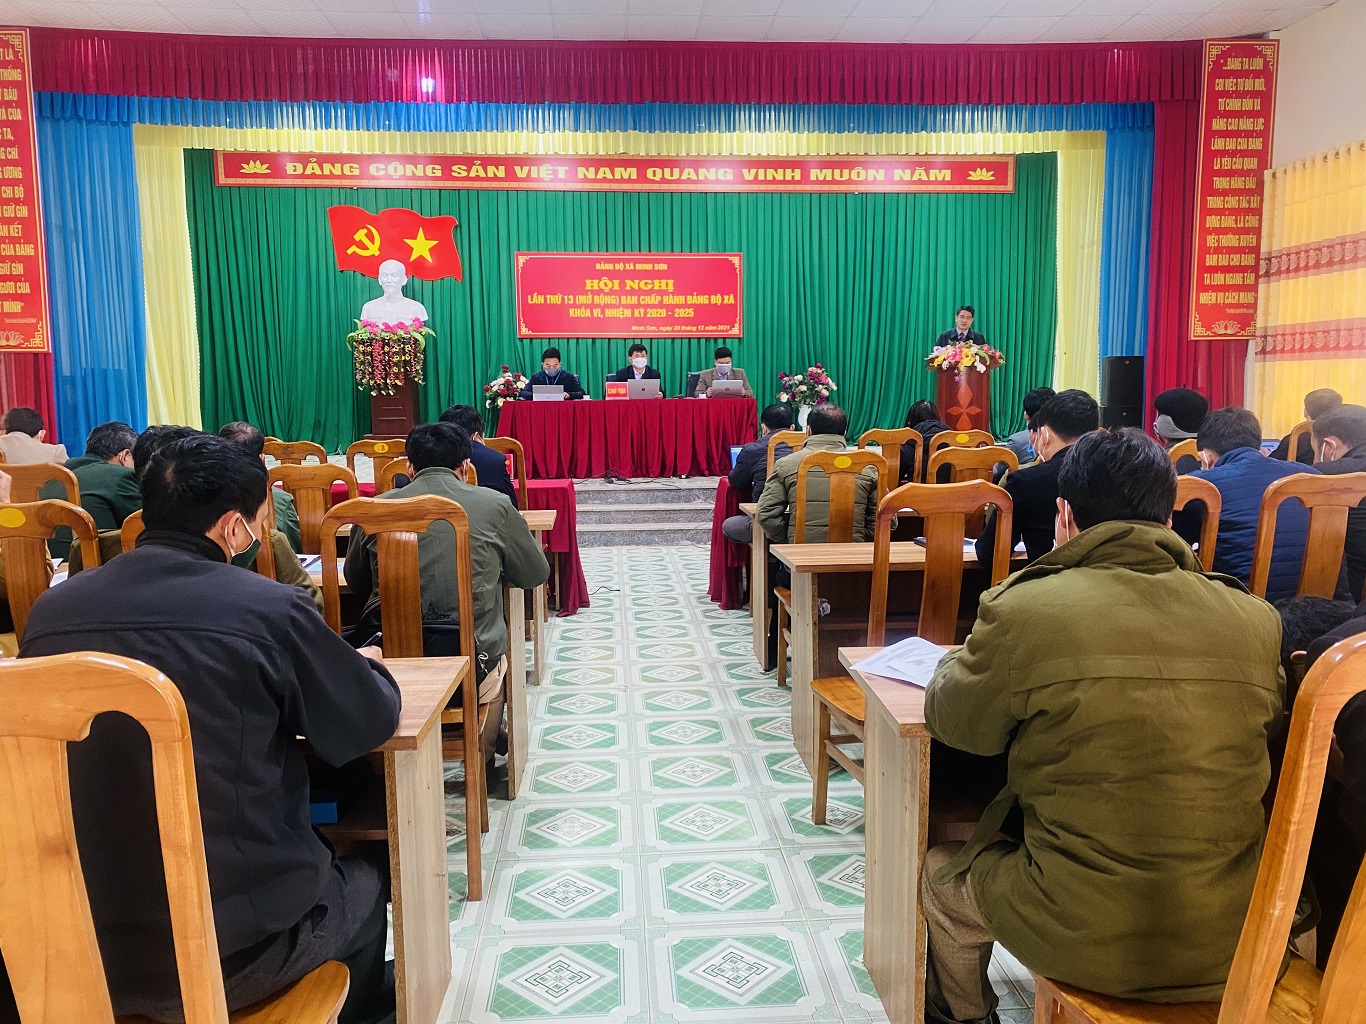 Hội nghị Ban Chấp hành Đảng bộ xã Minh Sơn lần thứ 13 khóa VI, nhiệm kỳ 2020 - 2025